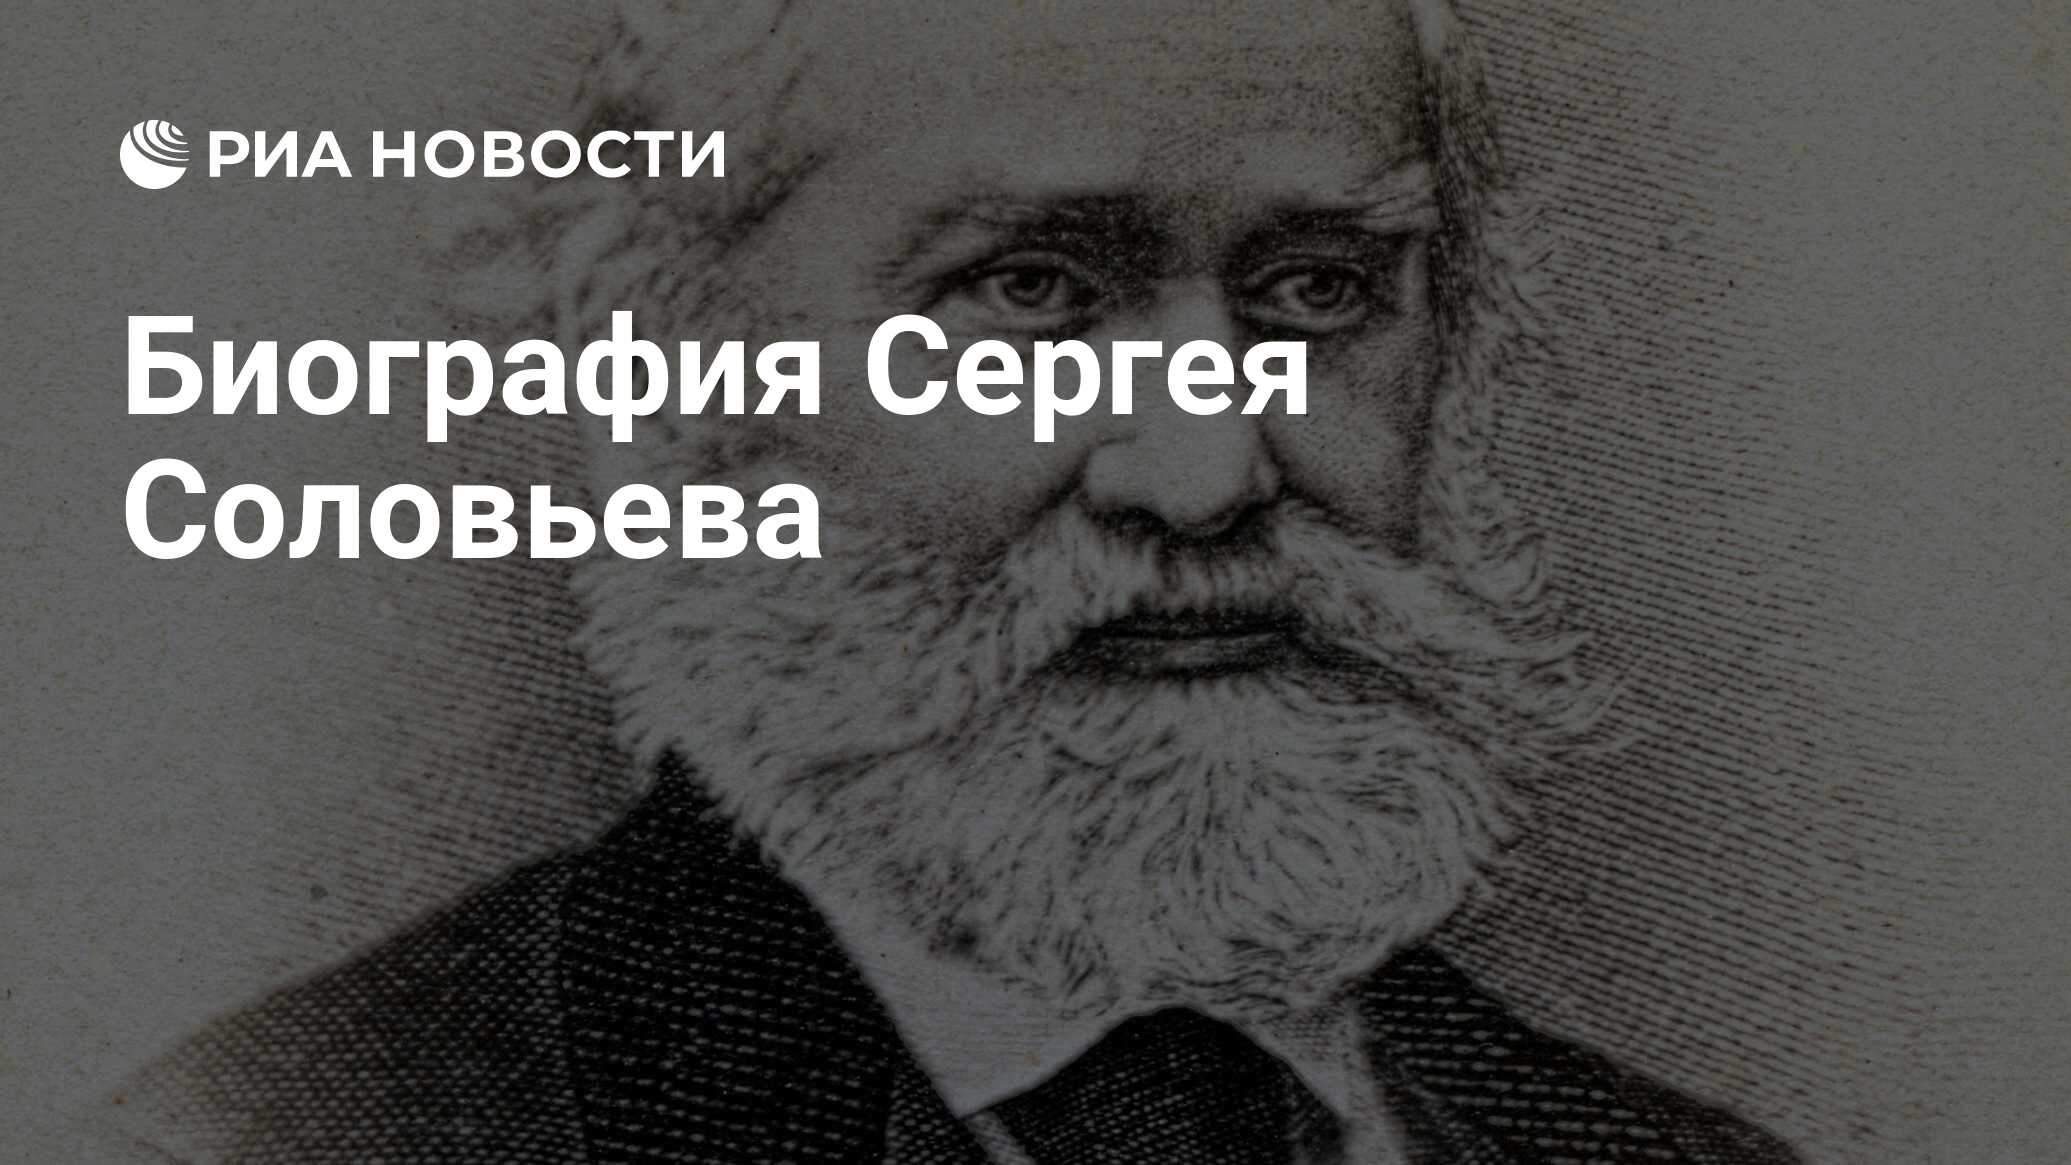 Сергей михайлович соловьев биография личная жизнь thumbnail